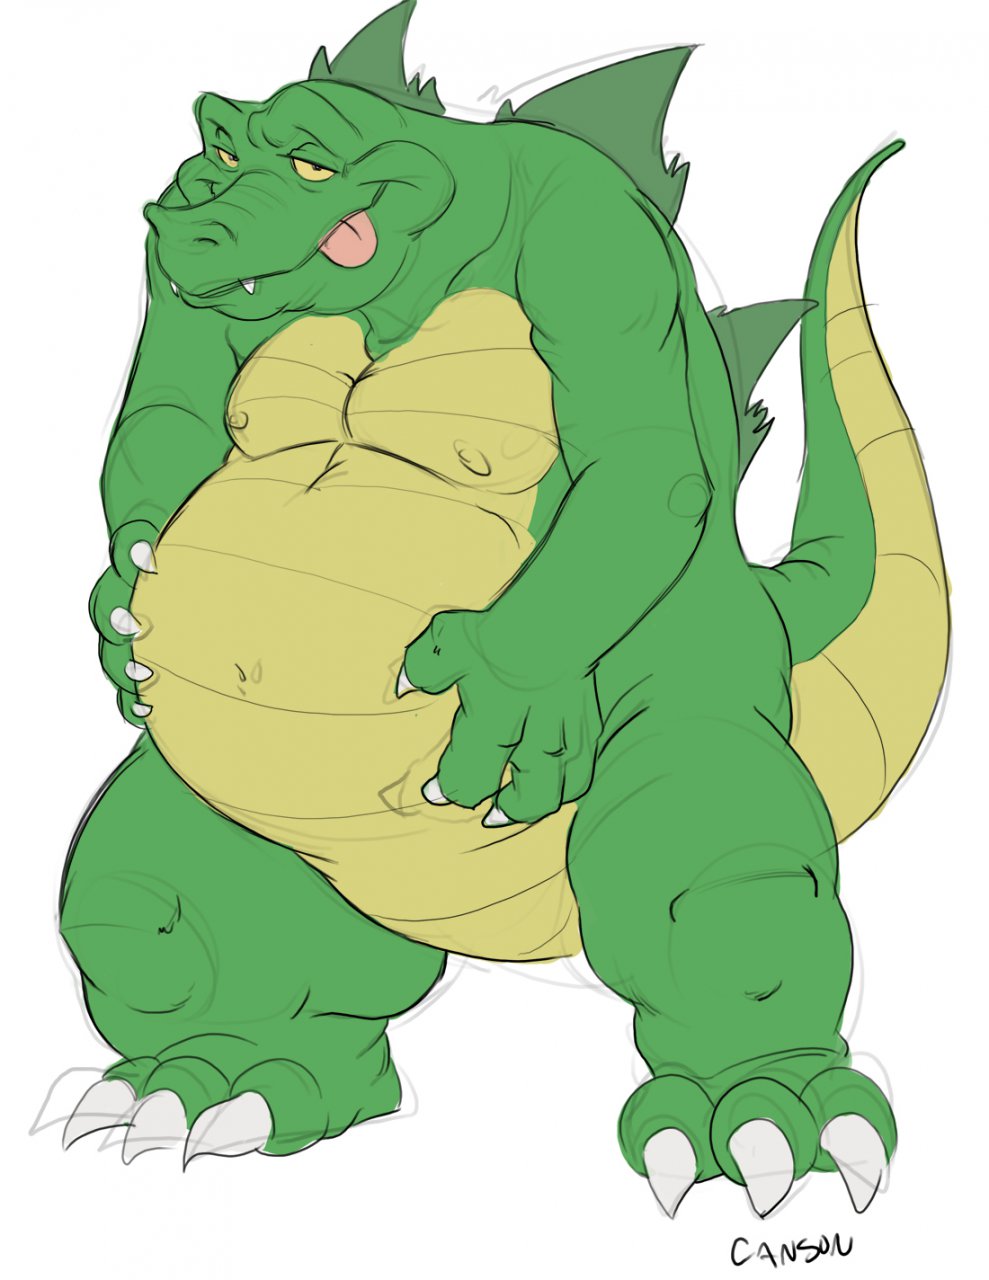 Gator belly